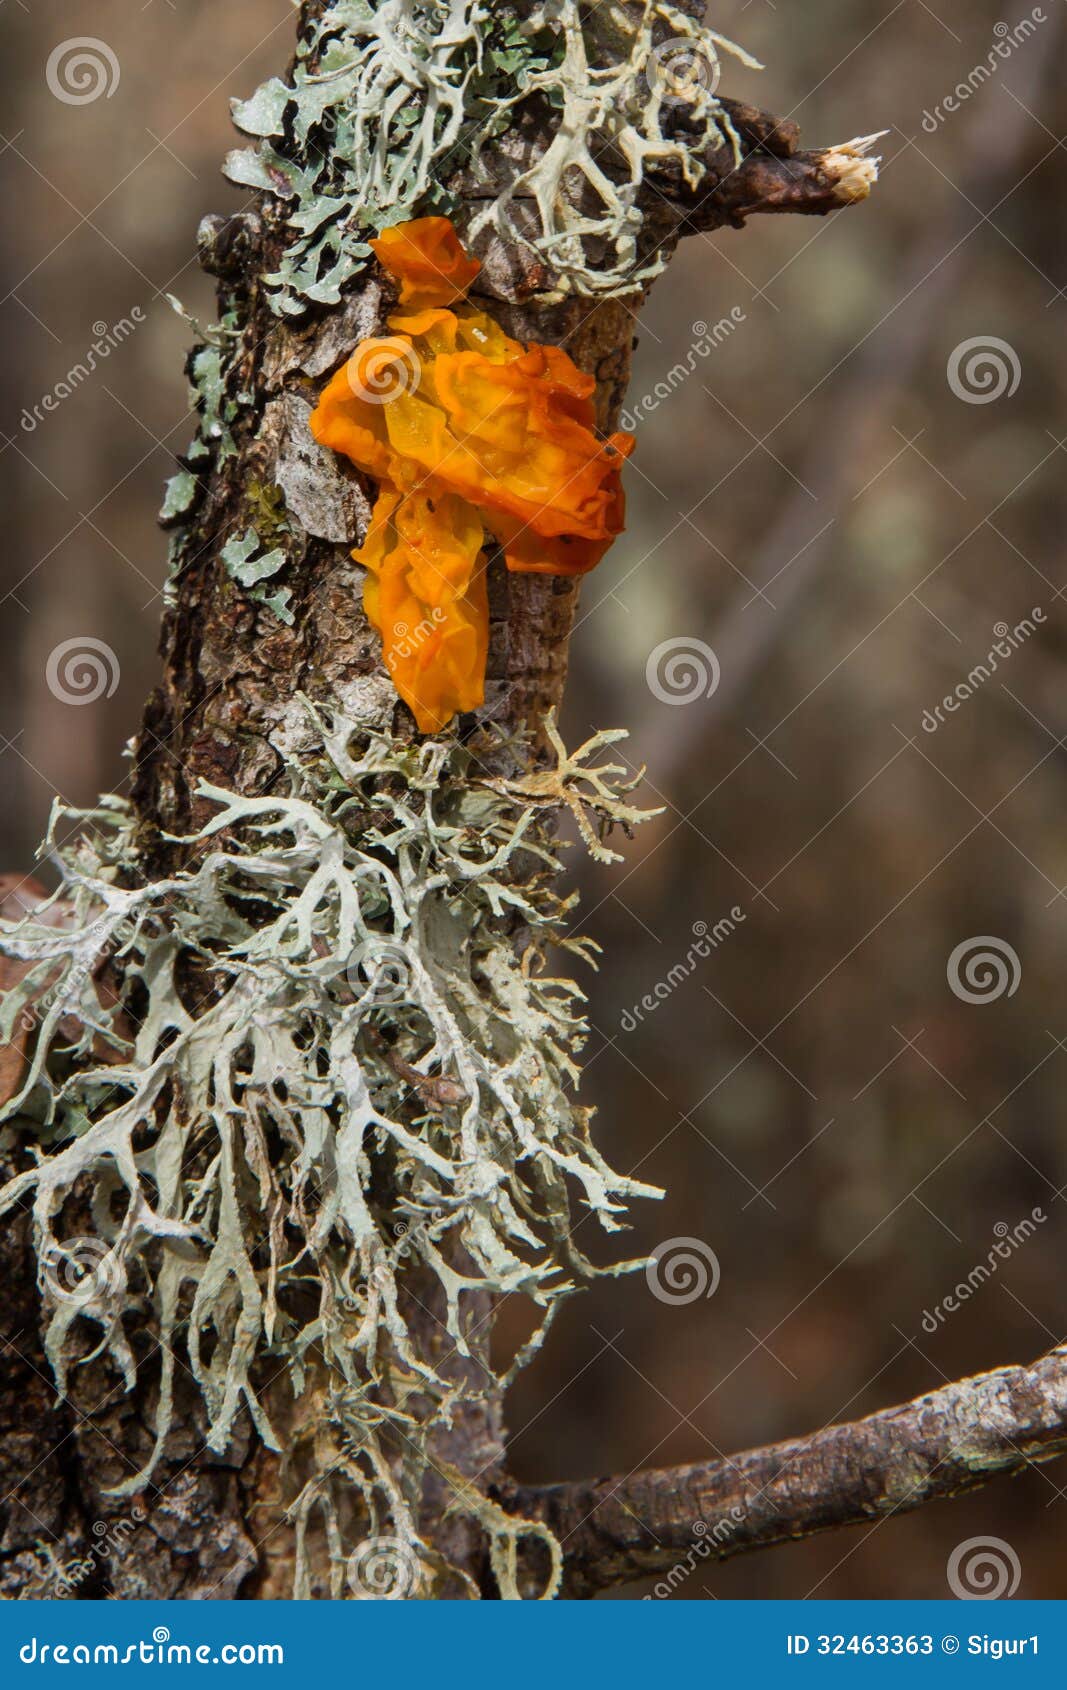 mushroom and lichens in oak trunk-